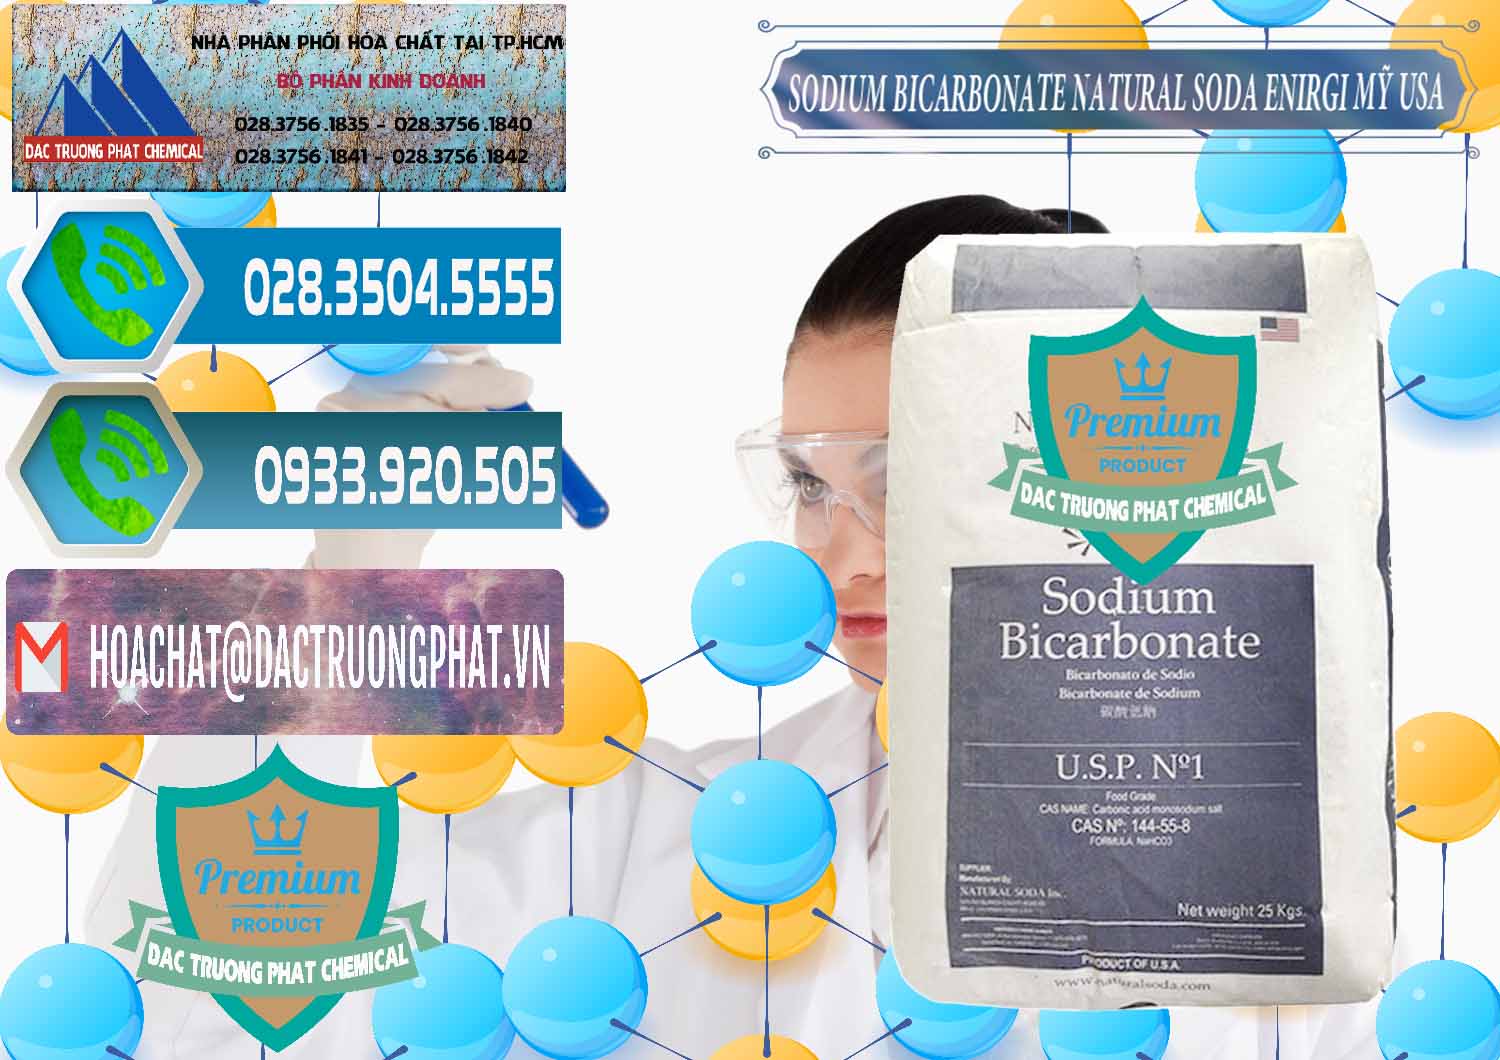 Cty nhập khẩu & bán Sodium Bicarbonate – Bicar NaHCO3 Food Grade Natural Soda Enirgi Mỹ USA - 0257 - Nơi cung cấp và bán hóa chất tại TP.HCM - congtyhoachat.net